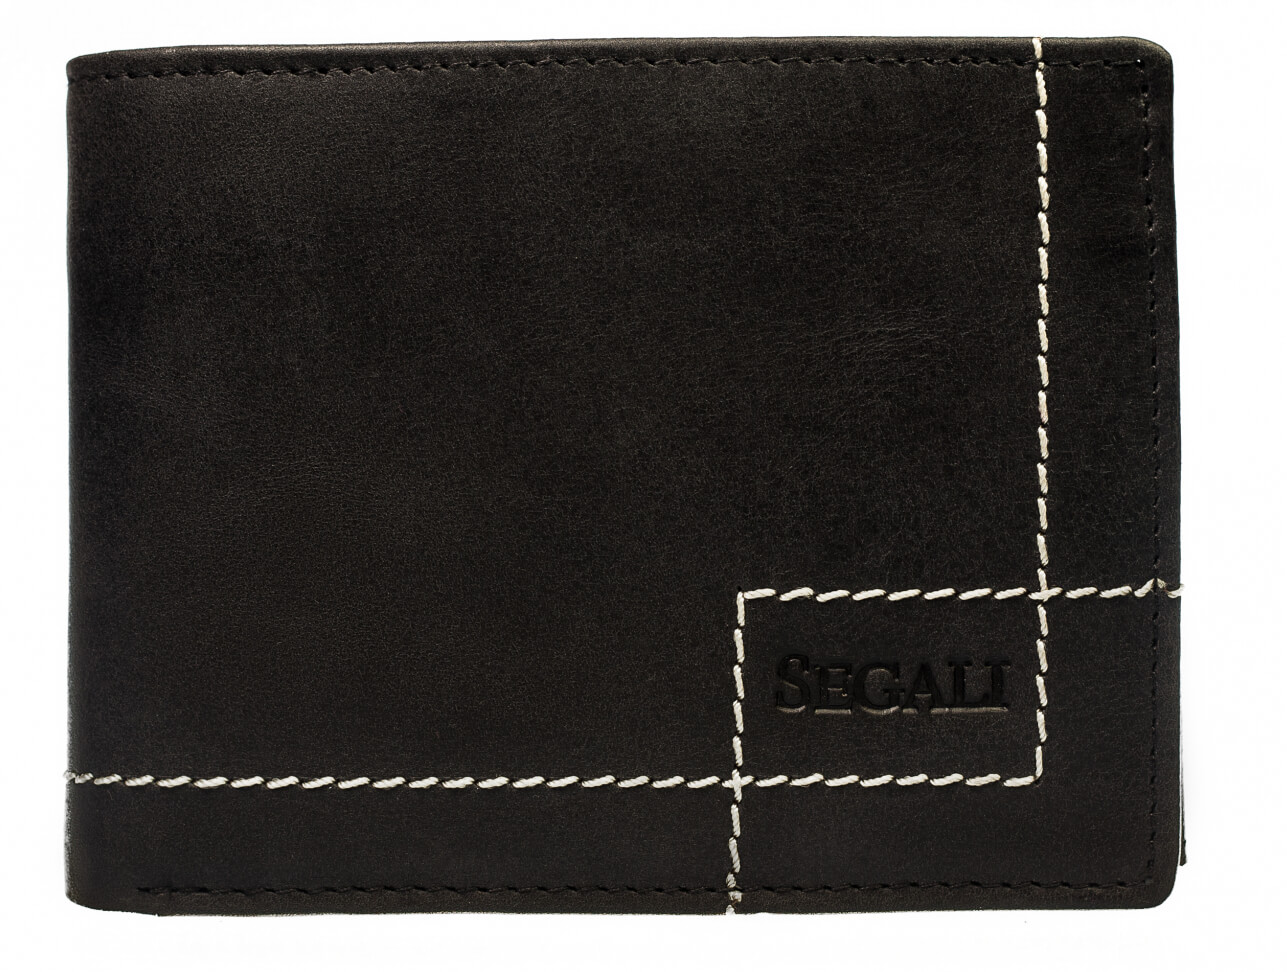 SEGALI Pánská kožená peněženka 02 black